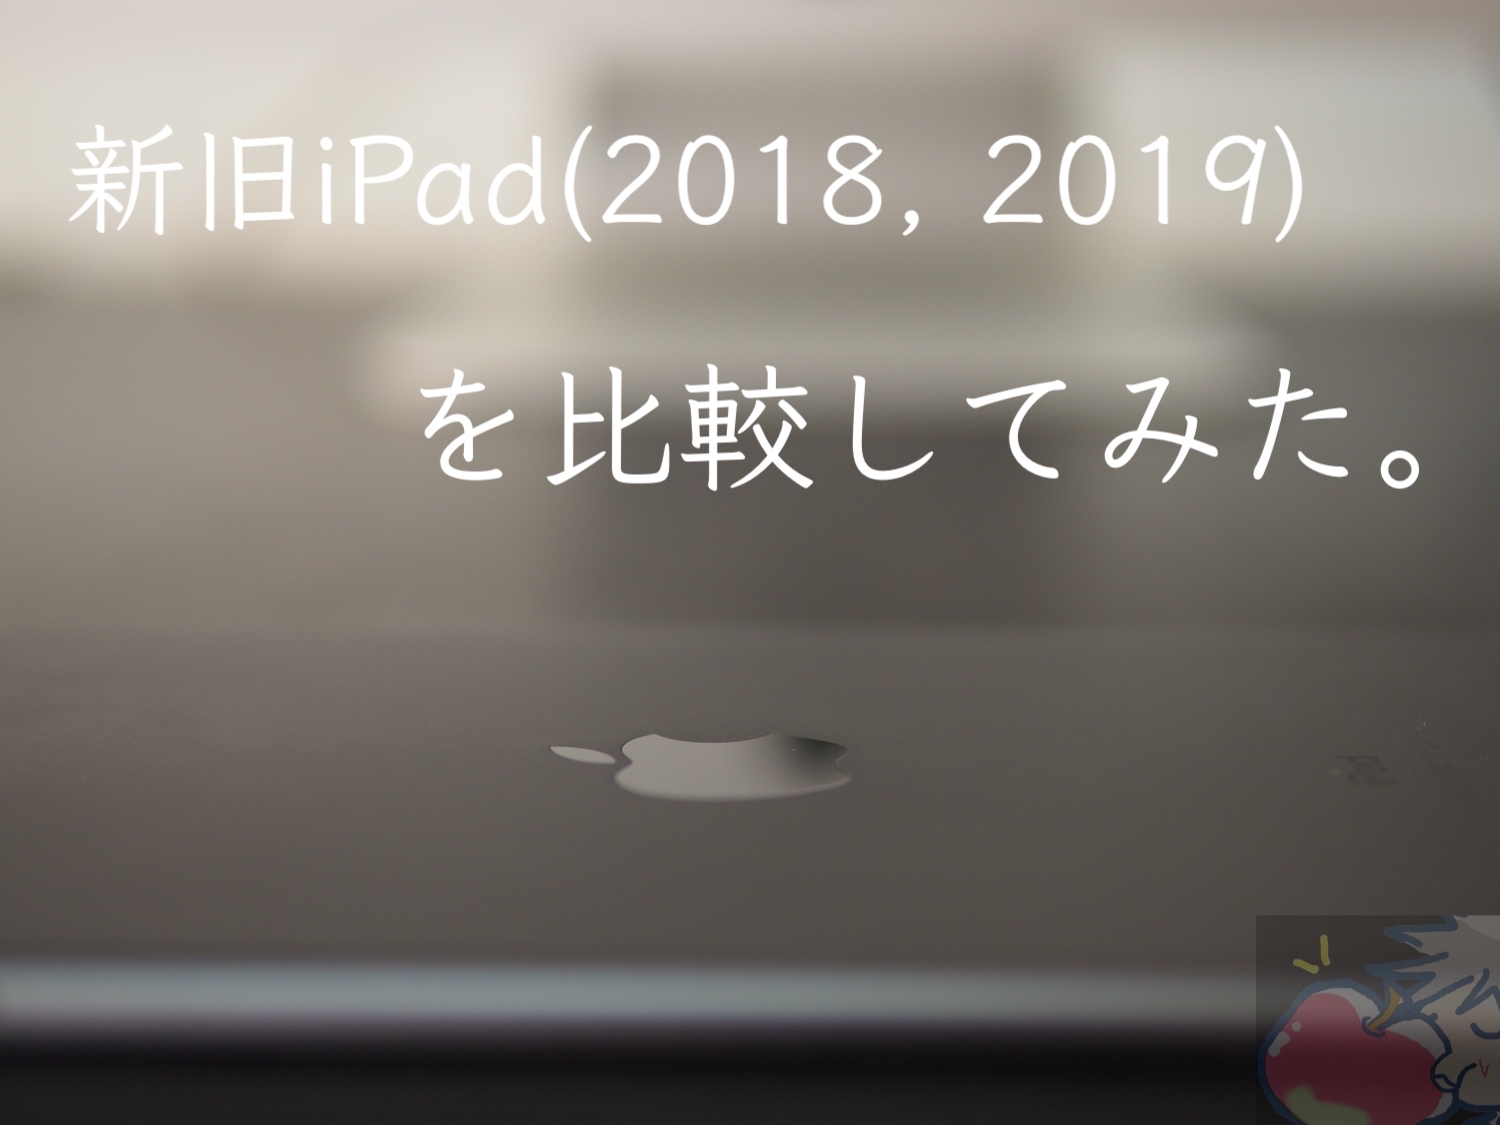 何が違うの？10.2インチiPad(2019)とiPad(2018)を比較してみた